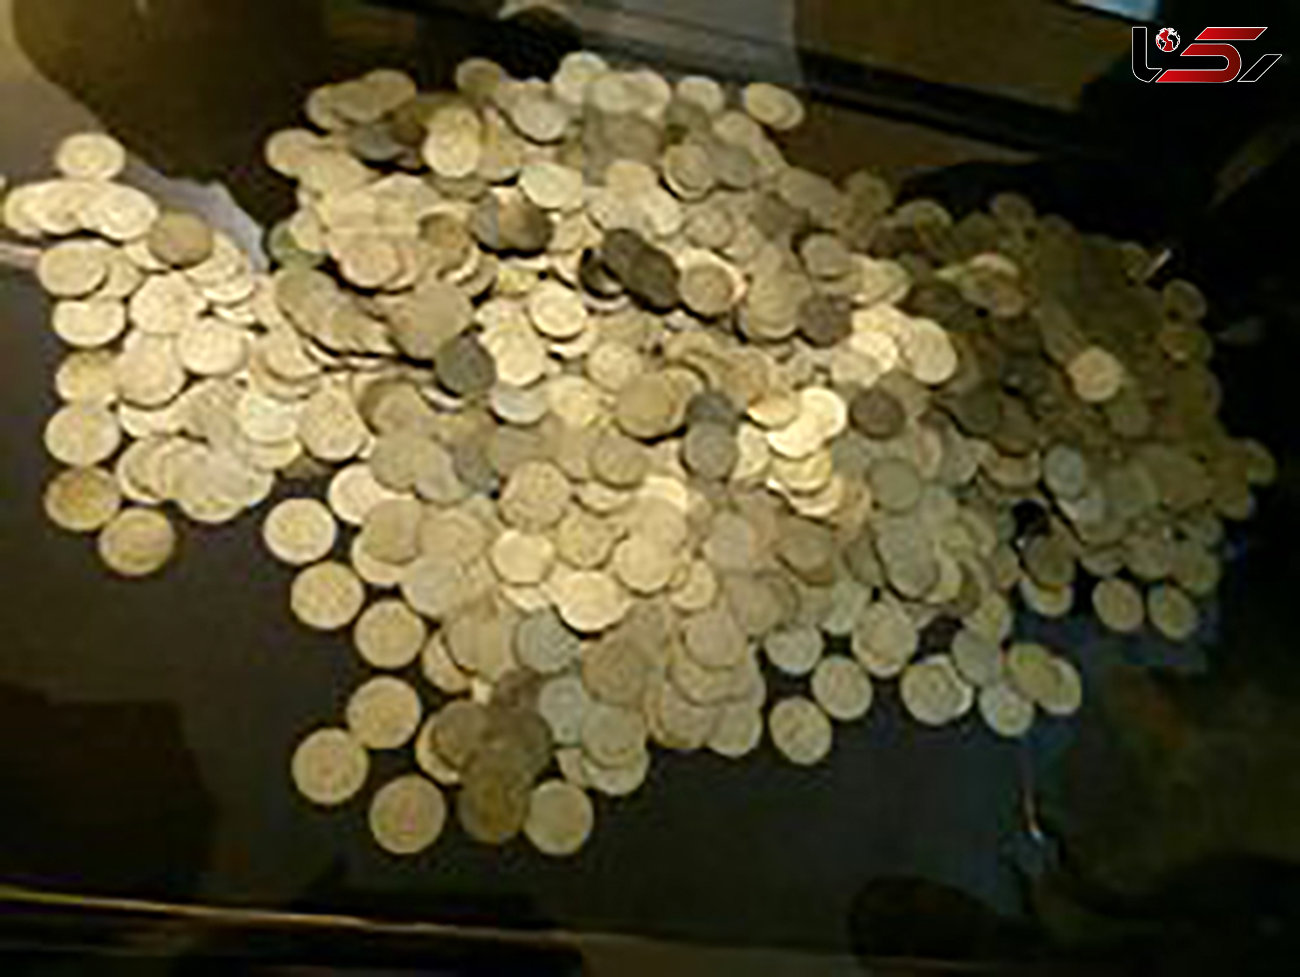 کشف بیش از 2 هزار سکه عتیقه در مشهد / 5 متهم دستگیر شدند